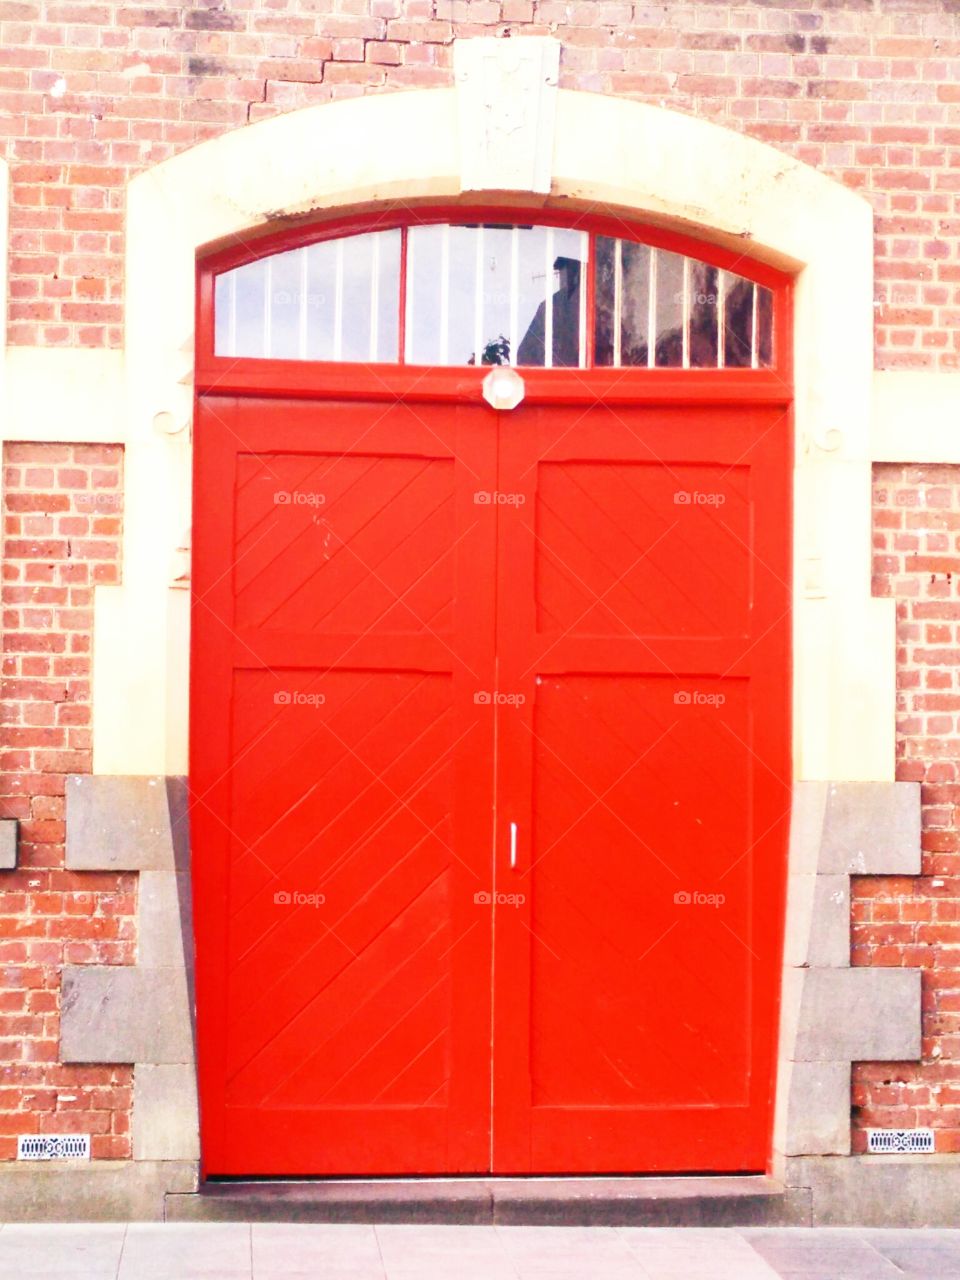 The blood-y door